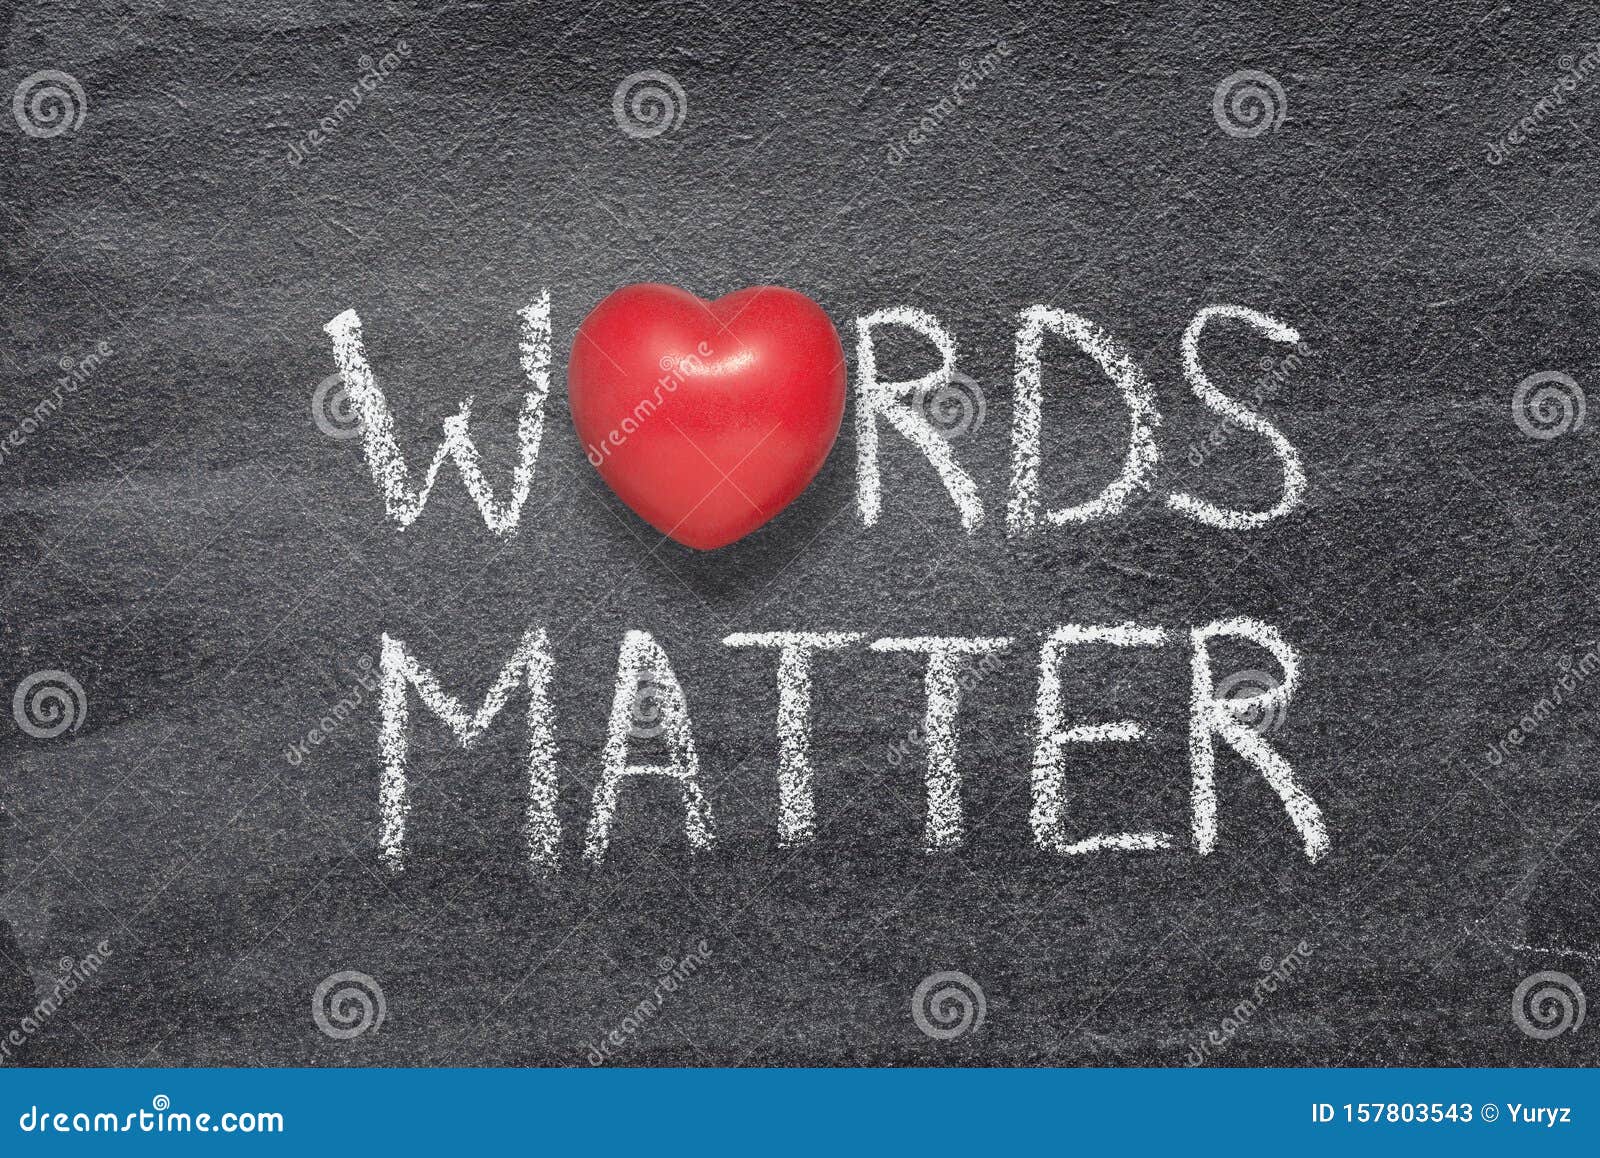 words matter heart